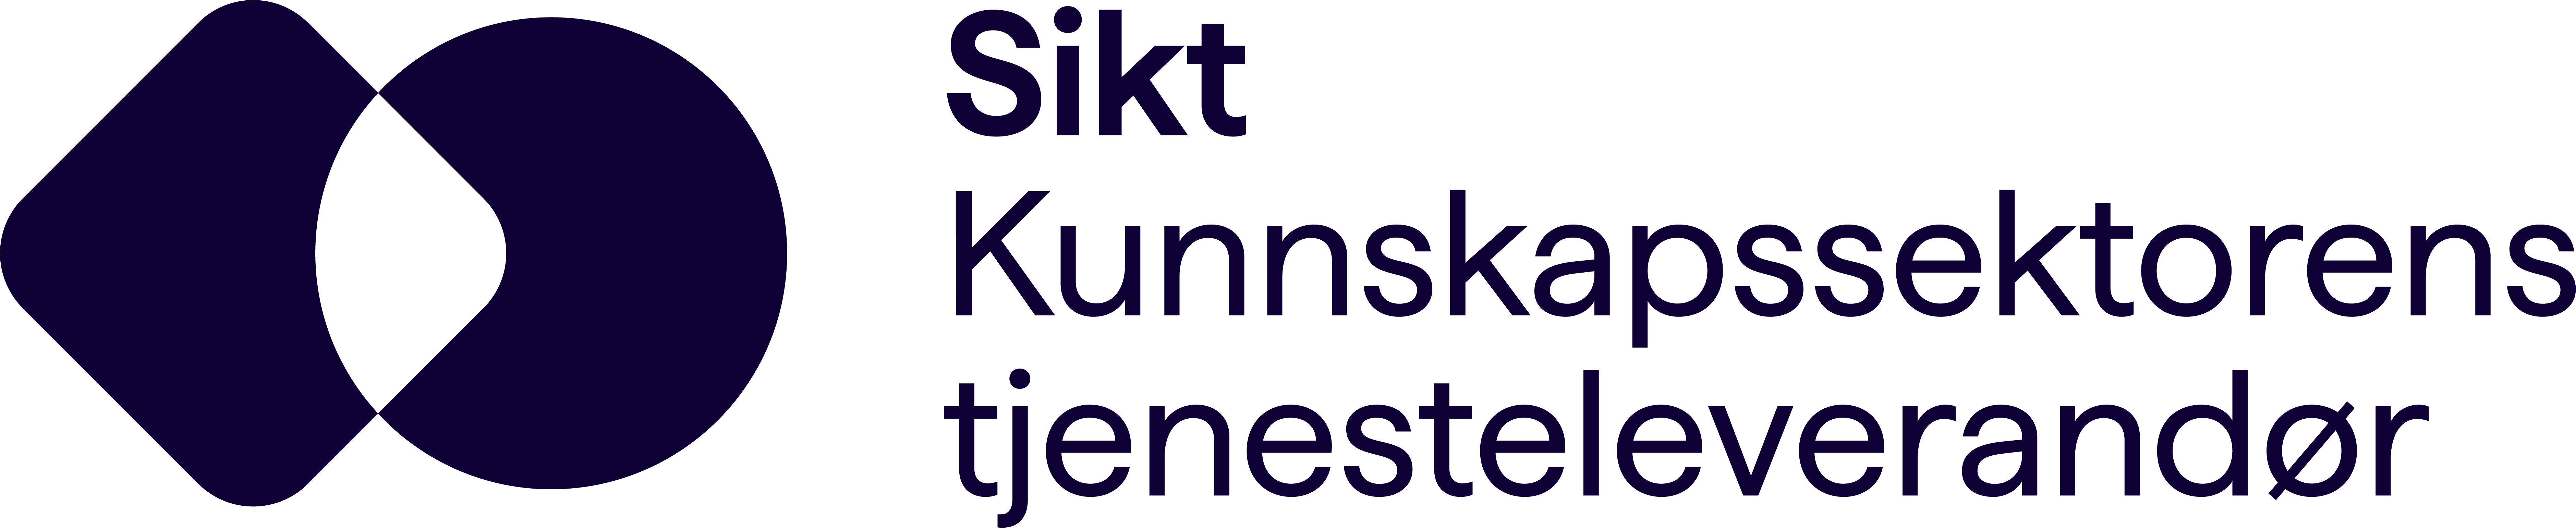 Sikt-logo